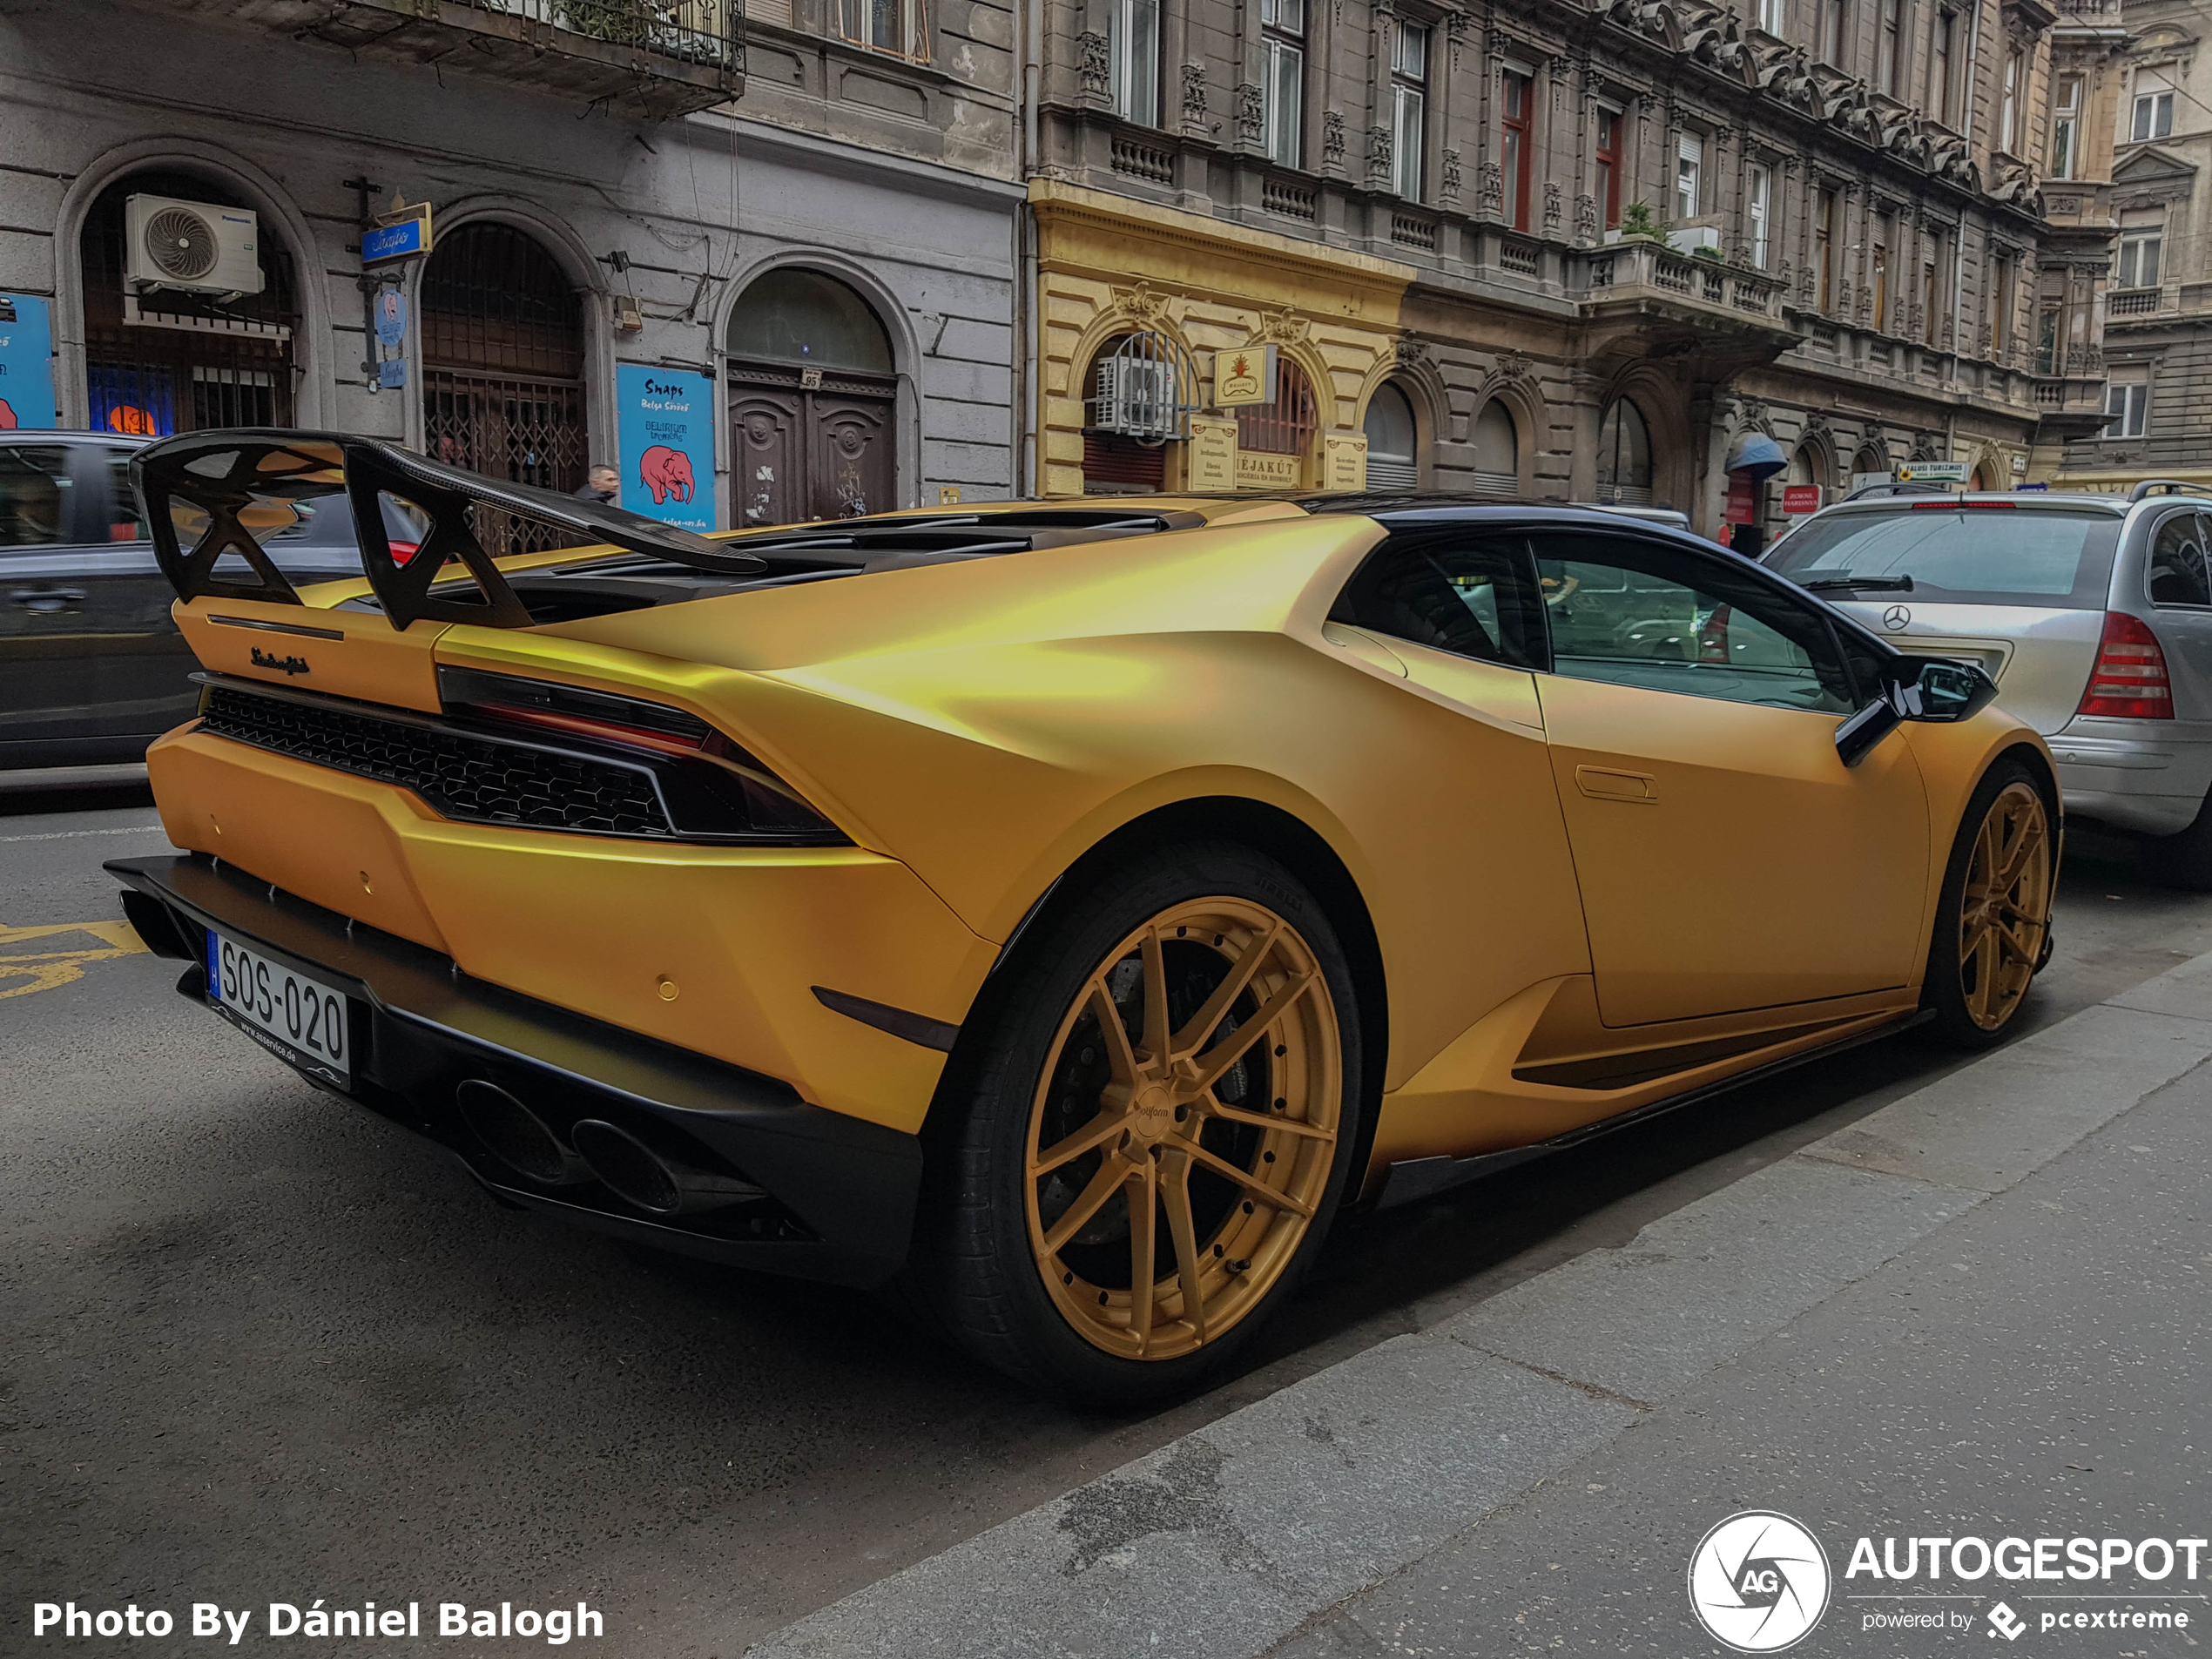 Deze gouden Lamborghini is niet van Joel Beukers!